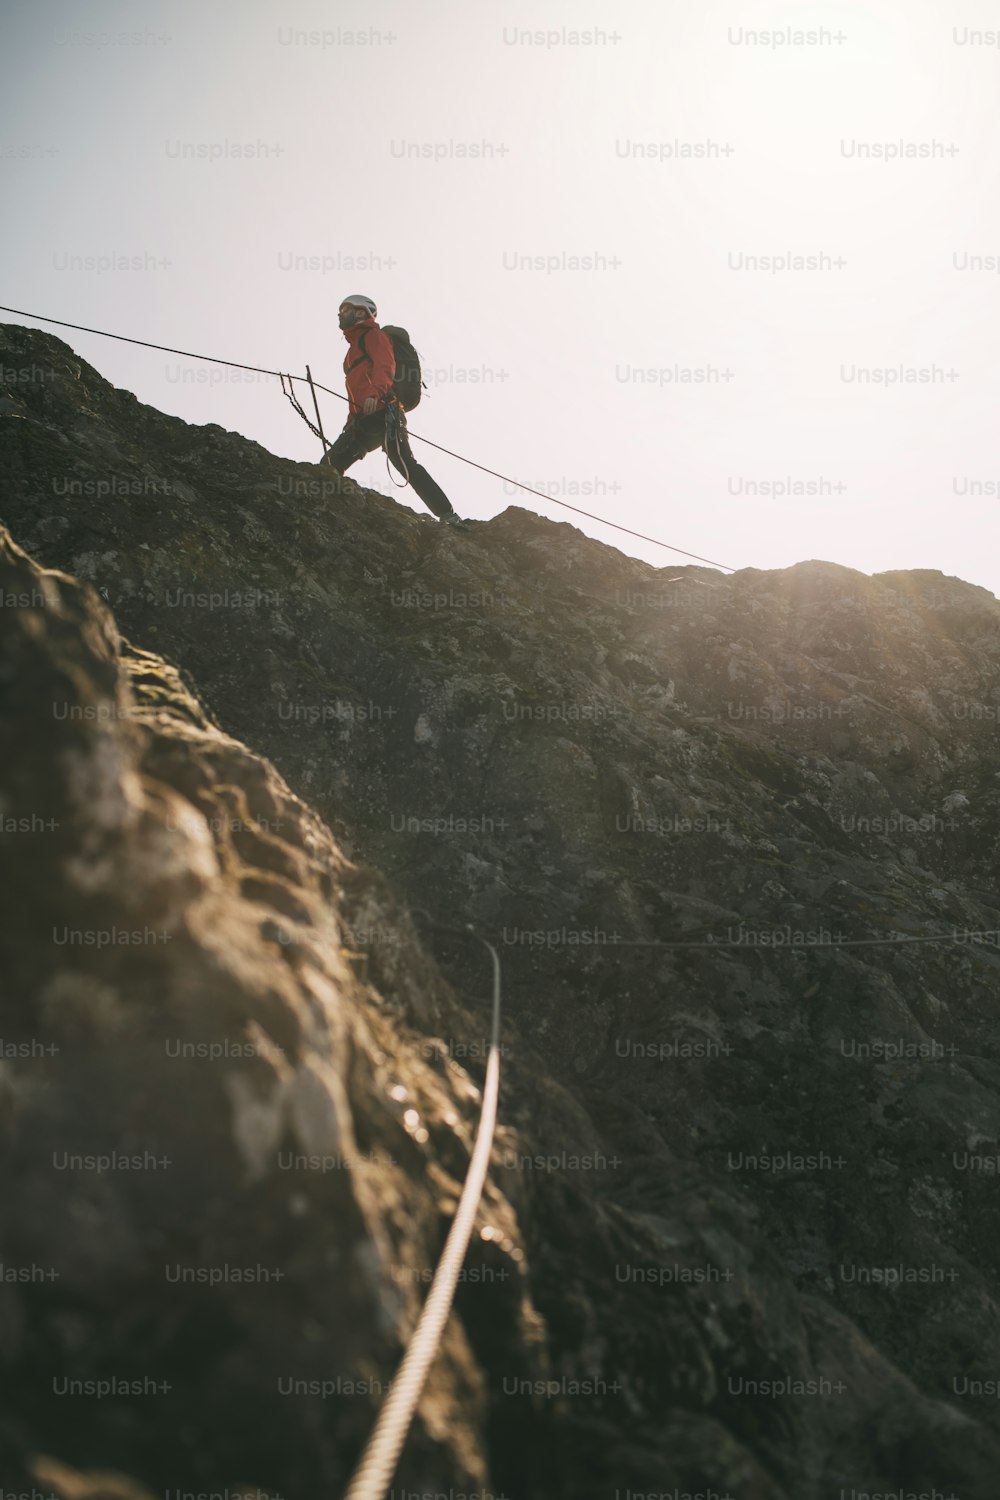 배낭을 메고 등반 로프를 사용하여 바위 산 정상을 오르는 등산가.